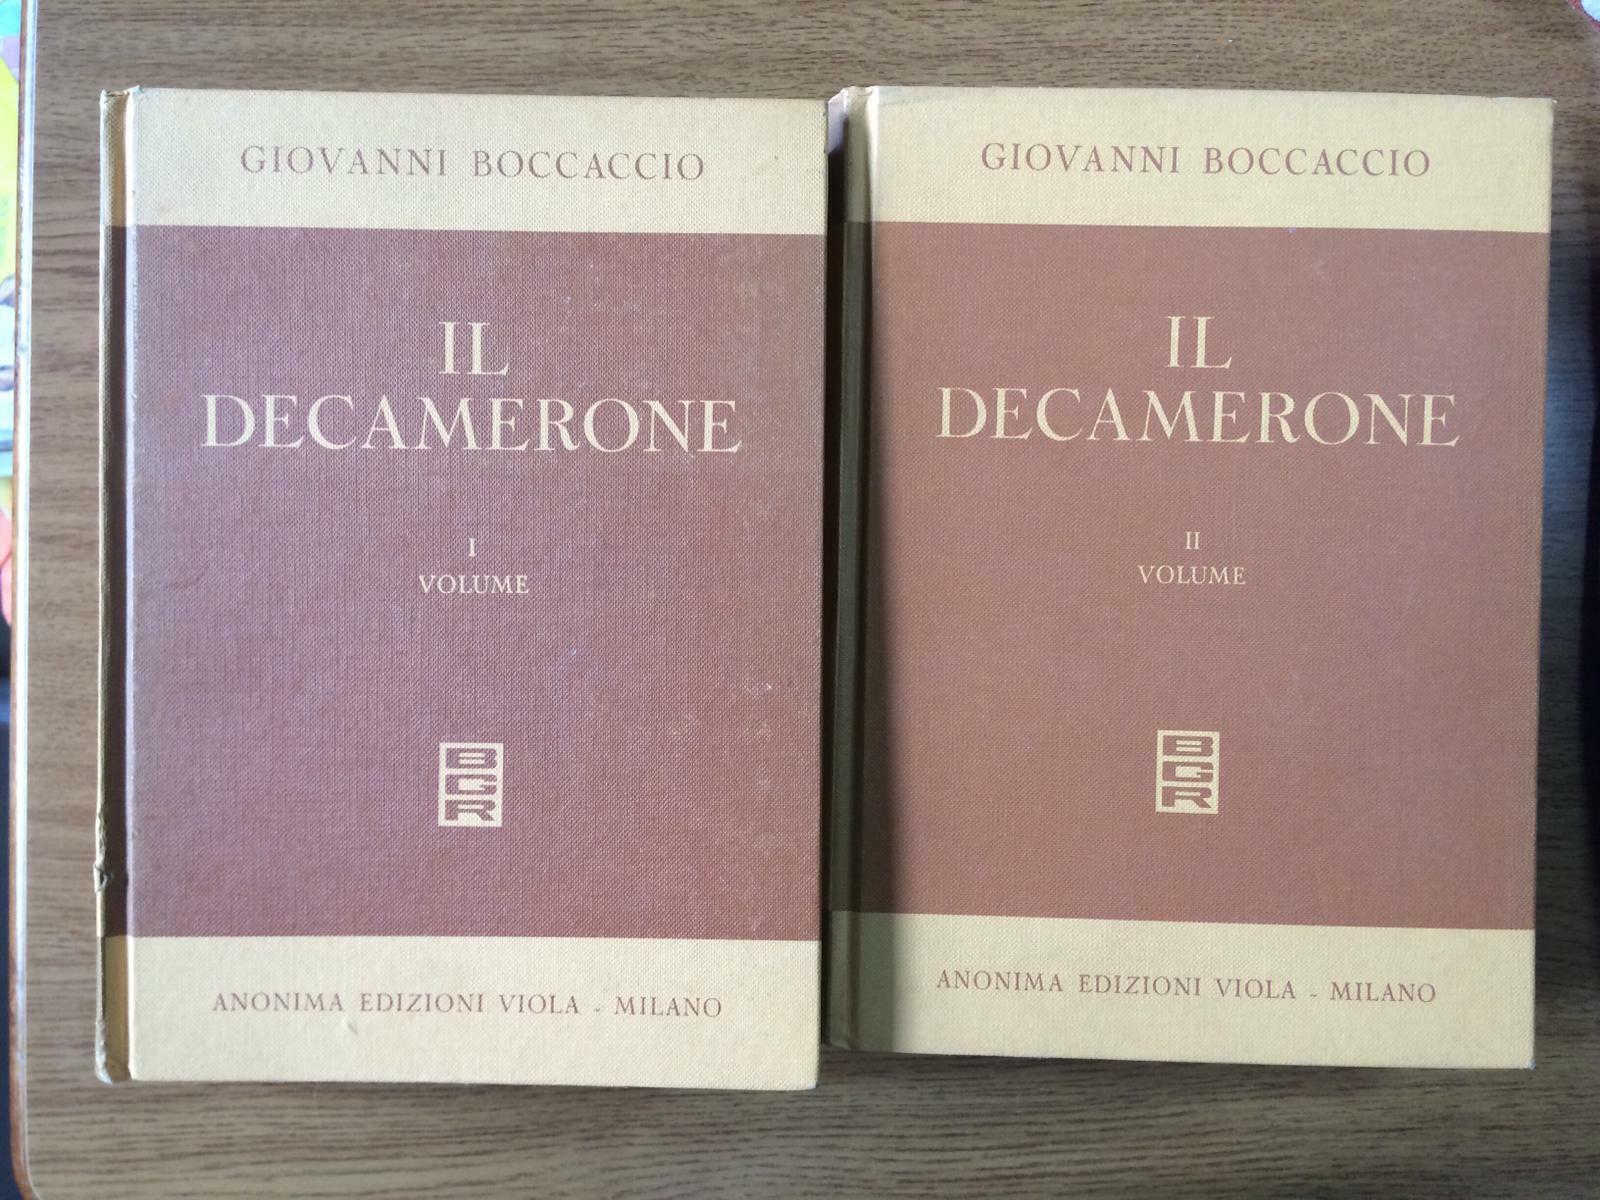 Il decamerone Vol. I e II - G. Boccaccio - Anonima edizioni viola - 1953 - AR